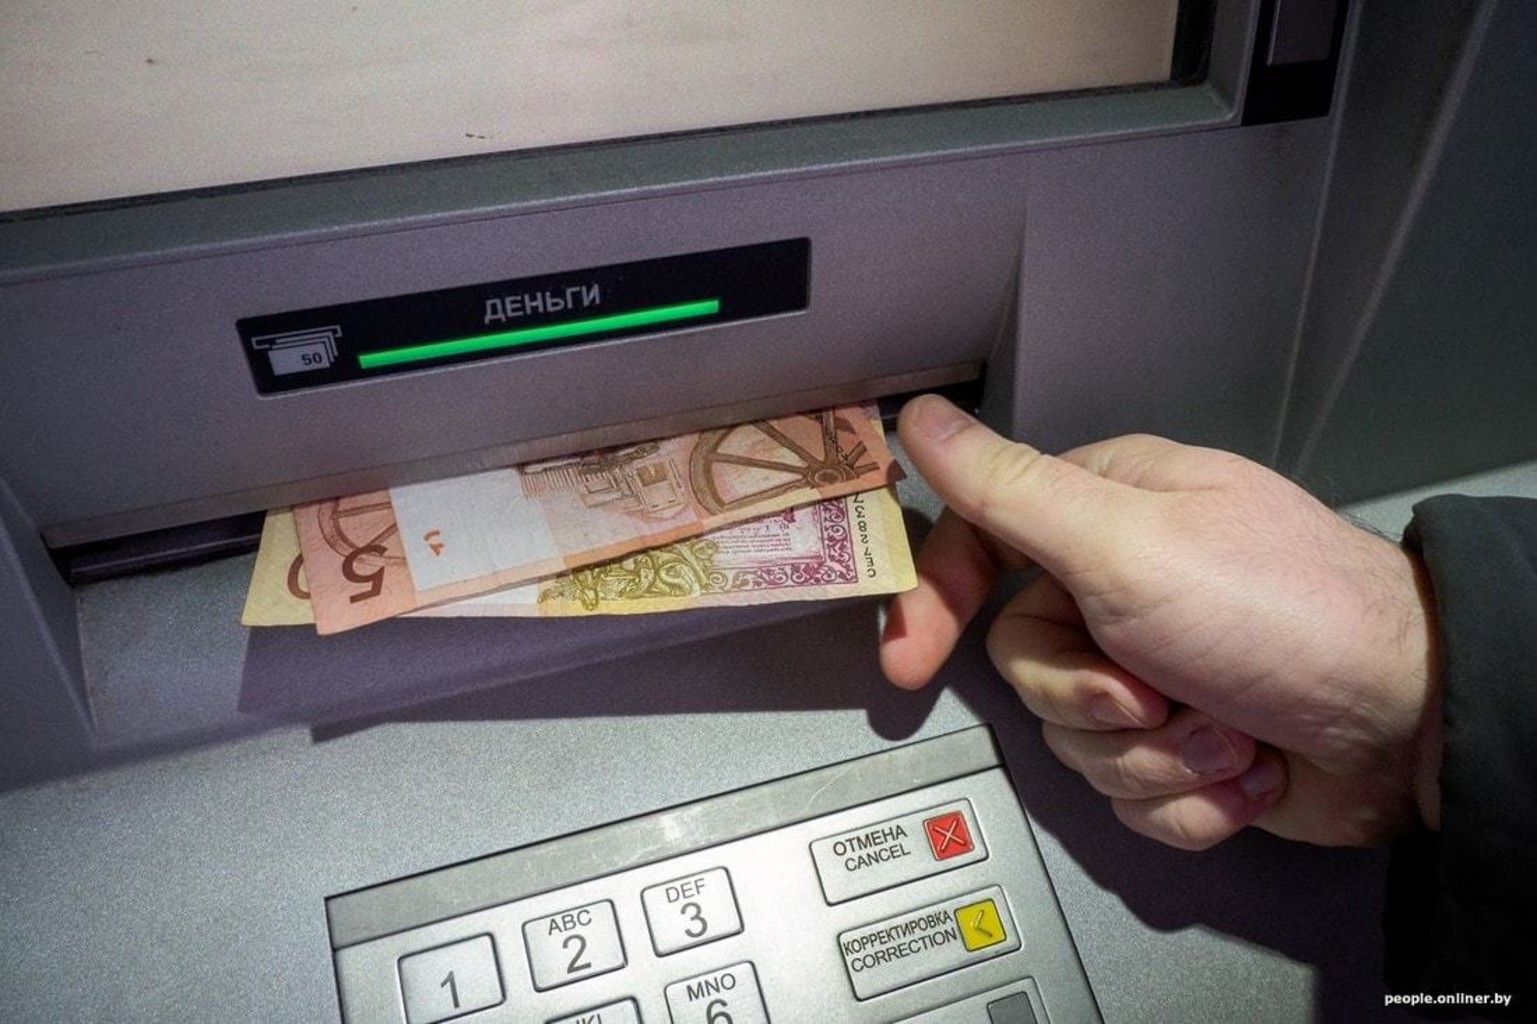 Банк россии снять деньги. Деньги из банкомата. Белорусские купюры в банкомате. Выдача денег в банкомате. Снятие денег в банкомате.